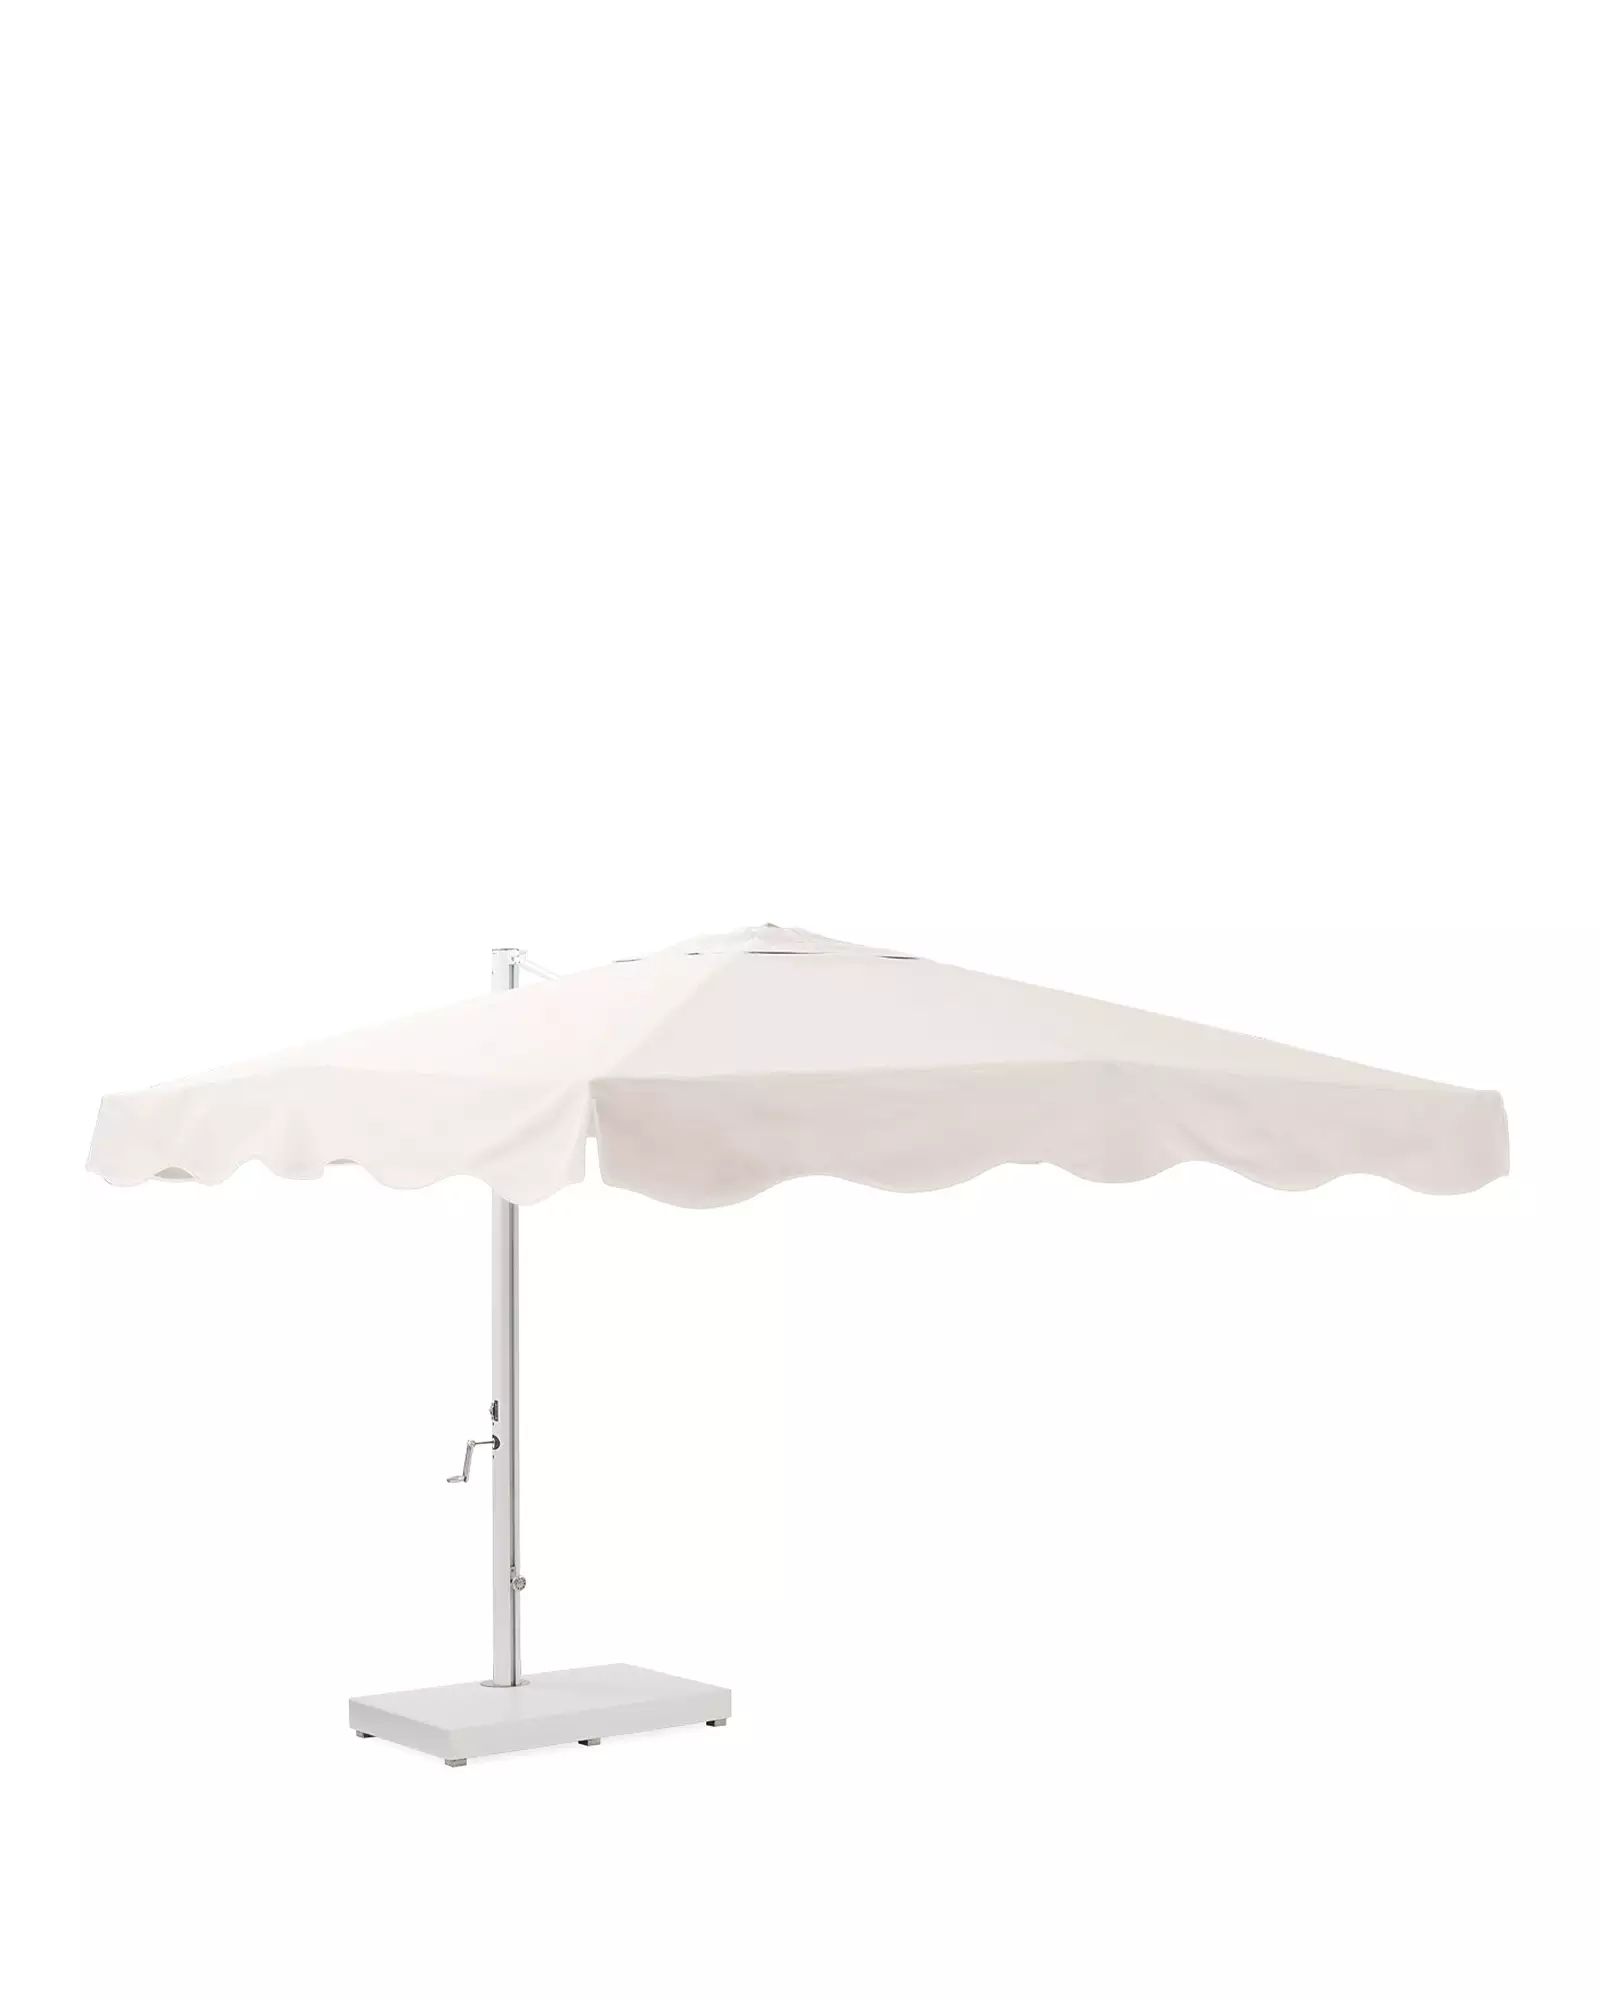 Monterosso Umbrella | Serena and Lily